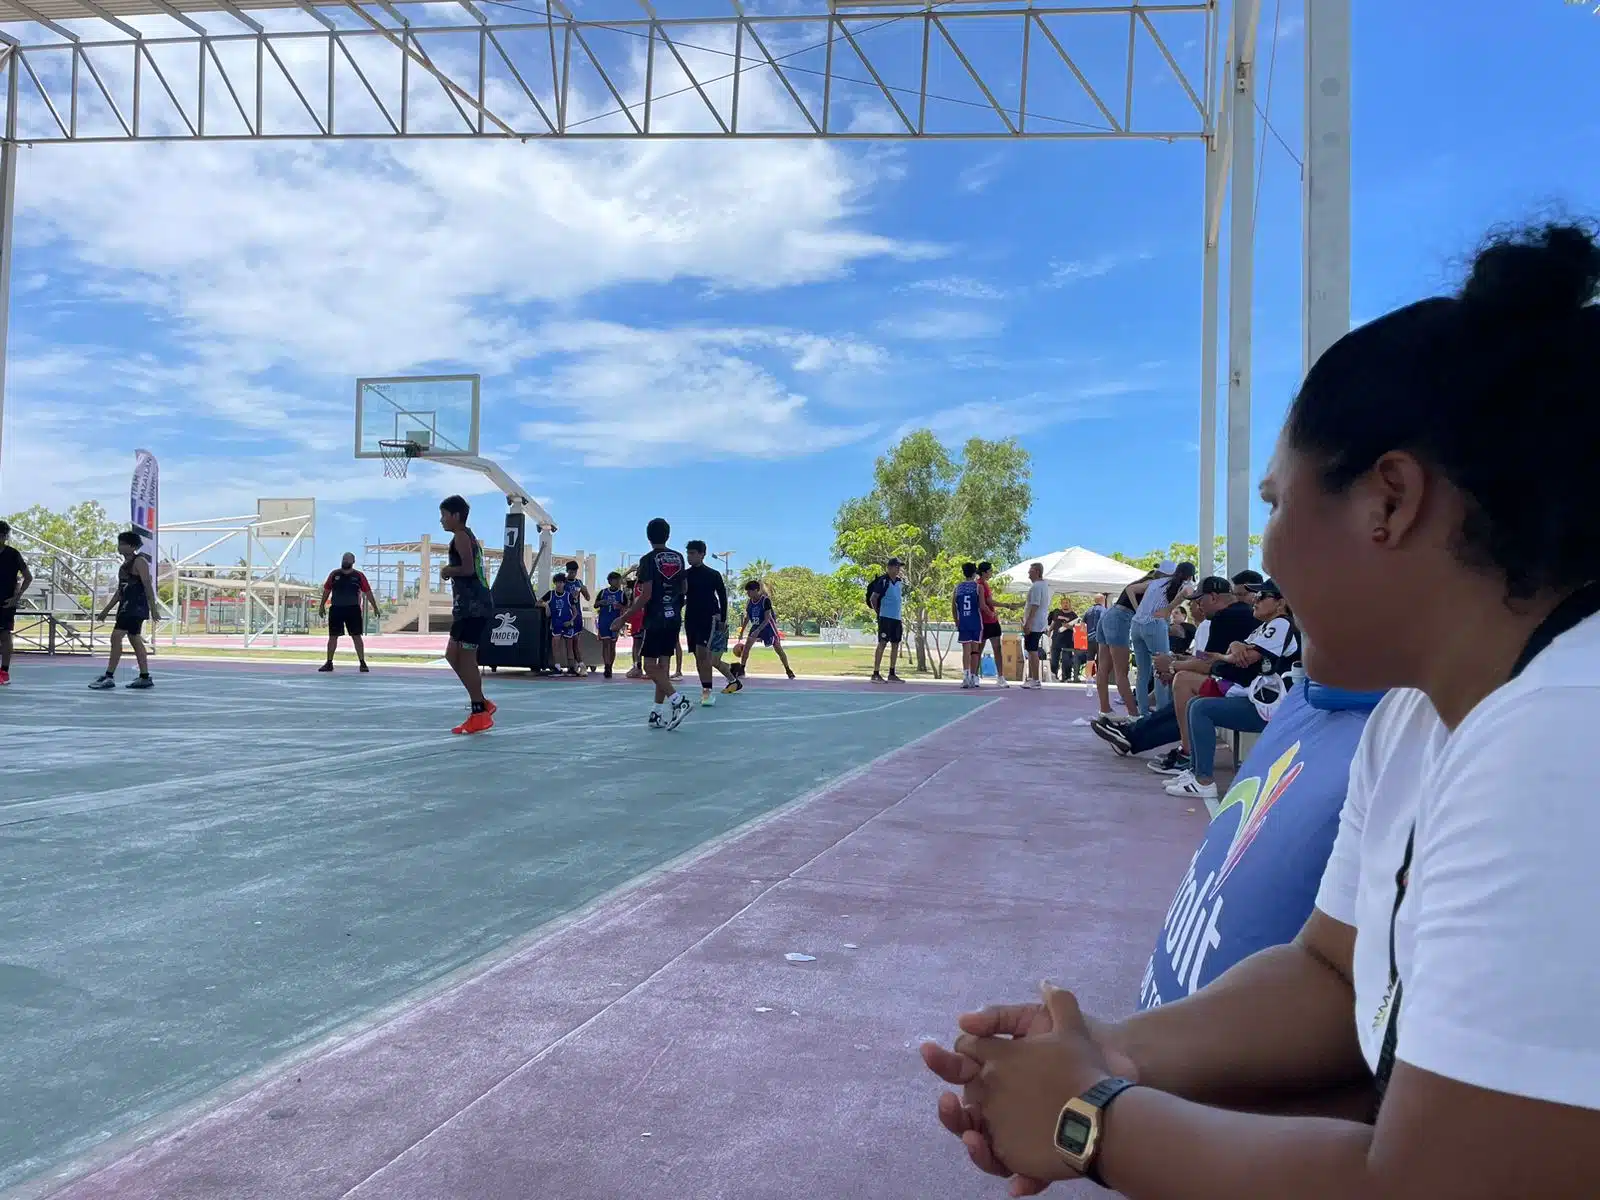 Personas acuden al evento de baloncesto Hoop It Up 3x3 en Mazatlán